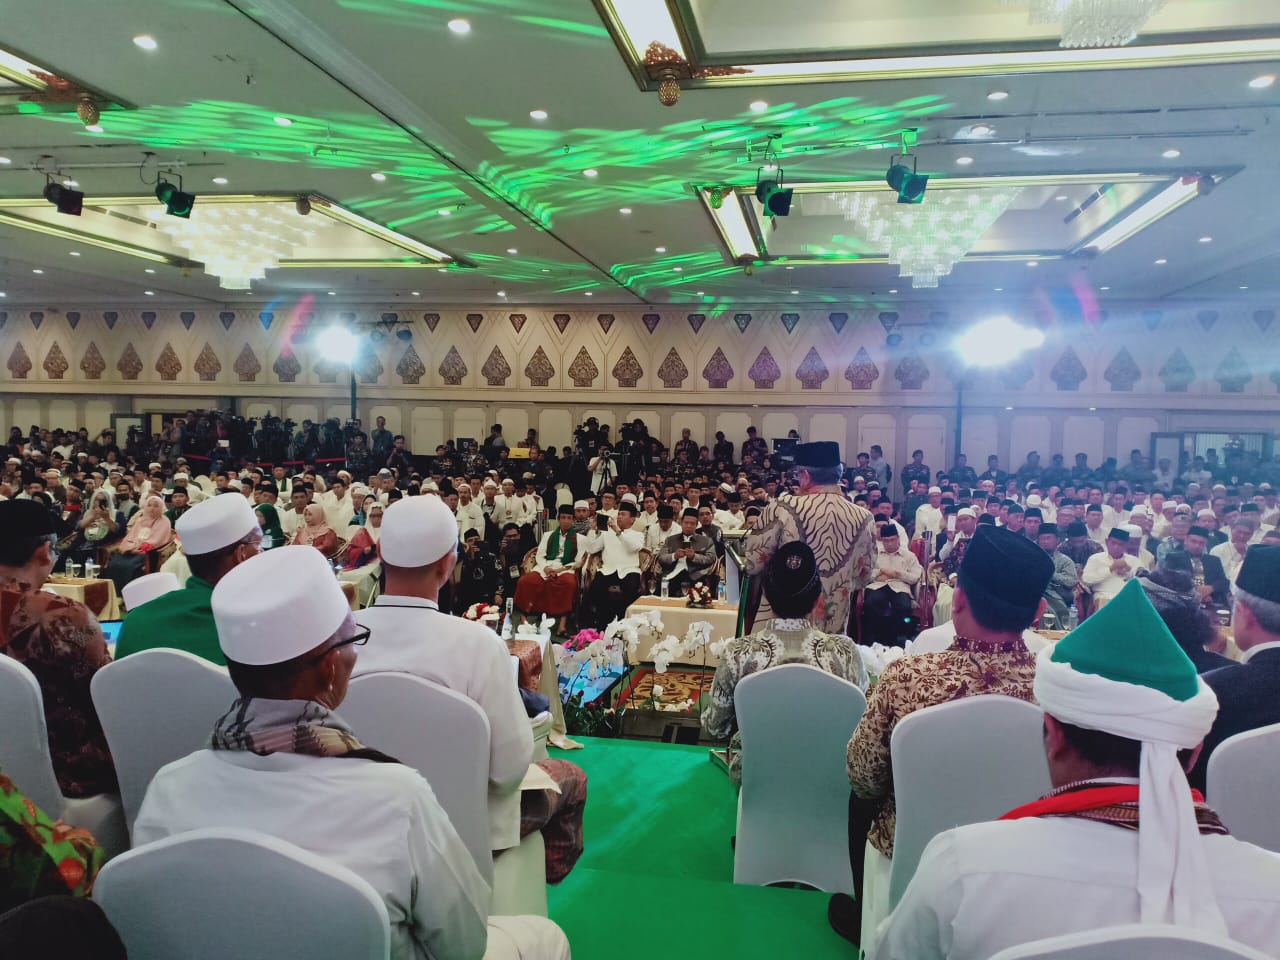 Multaqo (pertemuan) Ulama Nasional yang digelar di Jakarta, Jumat, 3 Mei 2019. (Foto: istimewa)